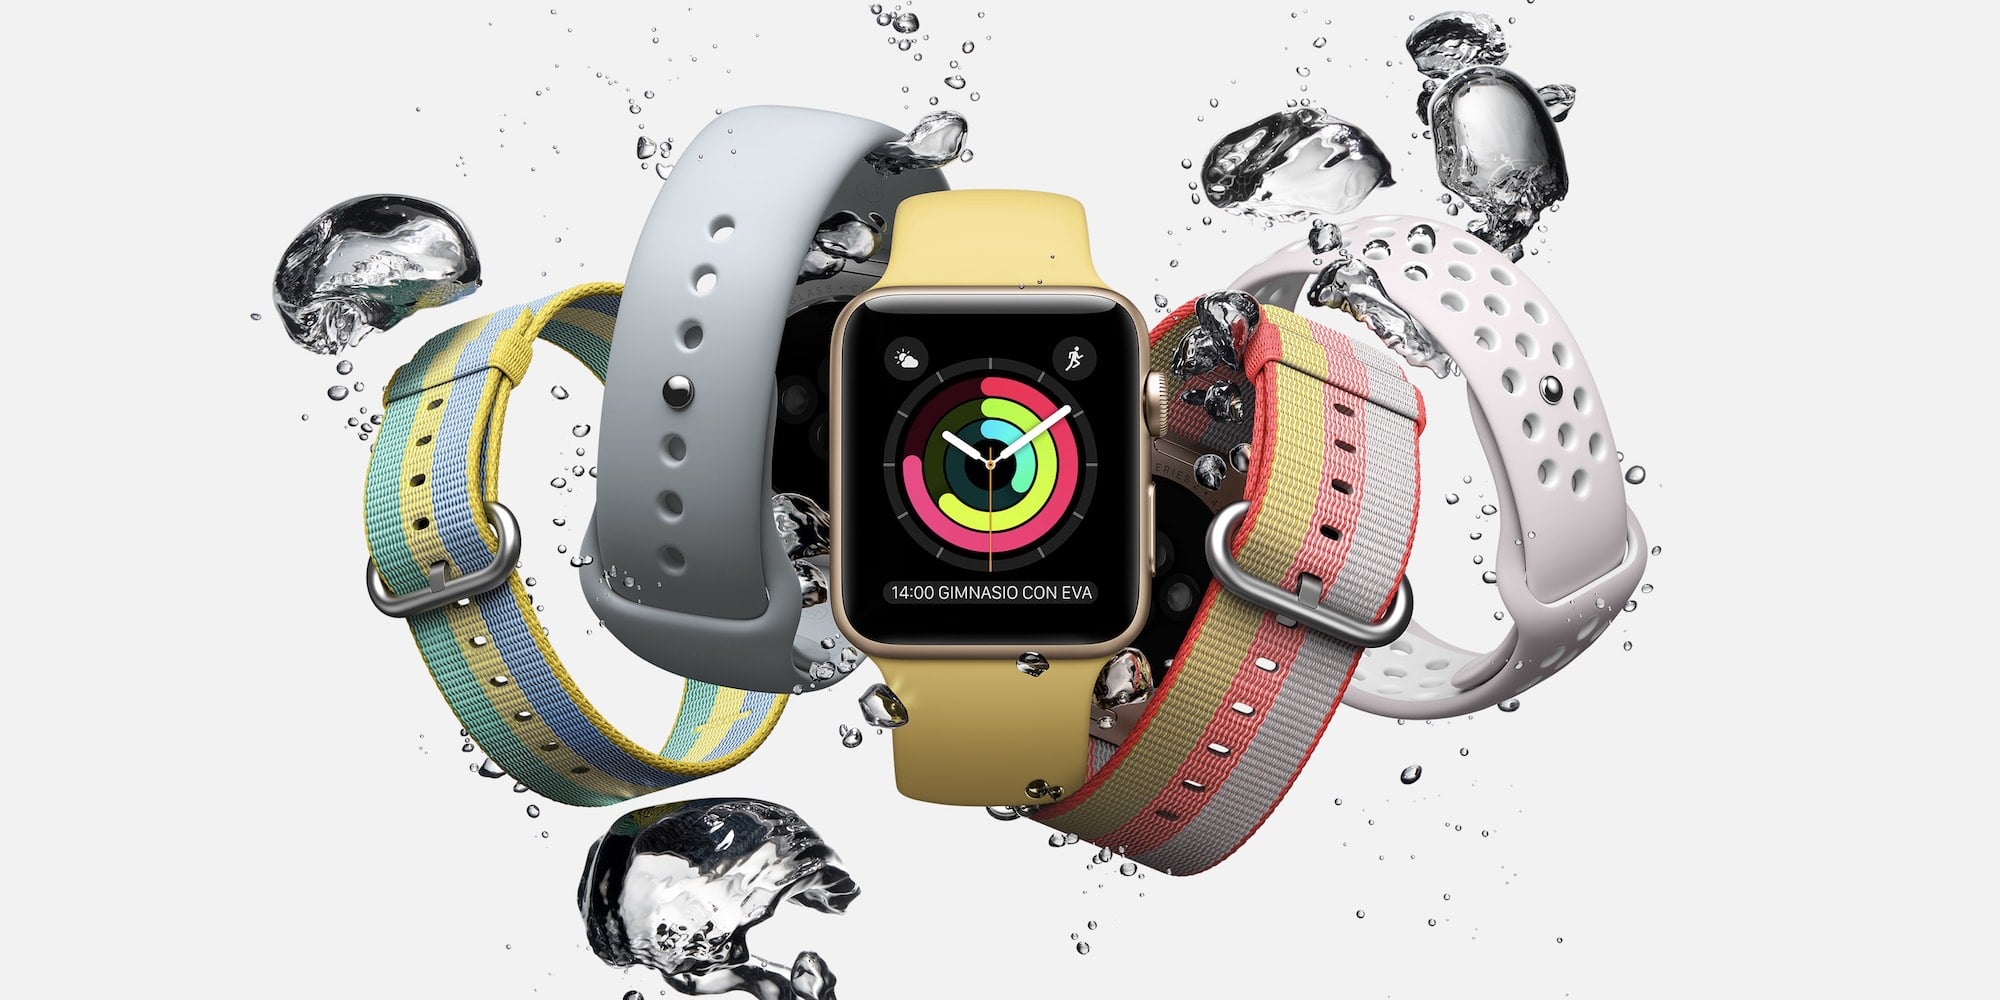 khả năng chống nước của apple watch | dienthoaigiakho.vn